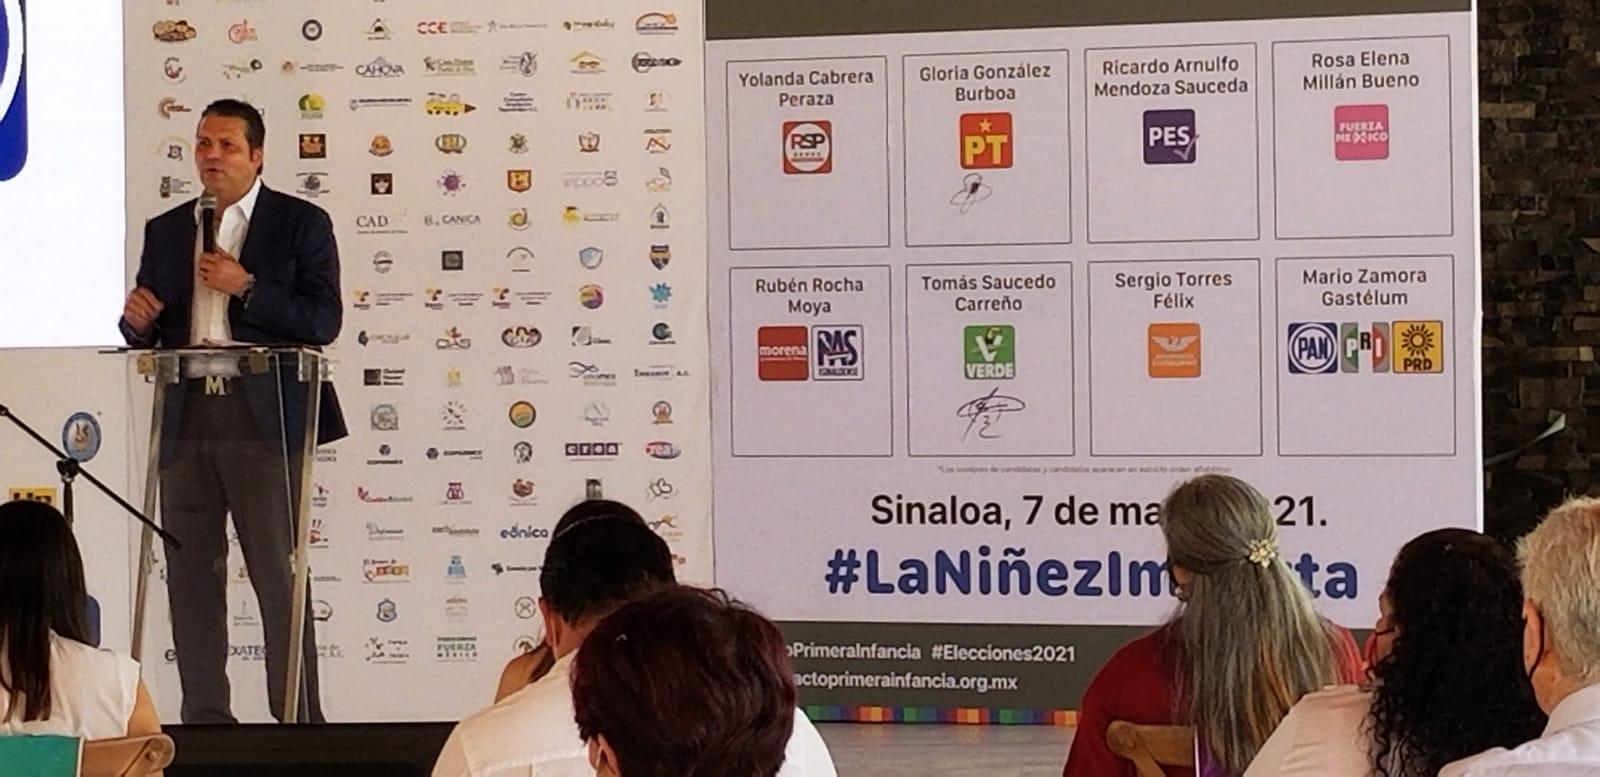 $!Mario Zamora Gastélum, candidato a Gobernador por la alianza Va por Sinaloa.